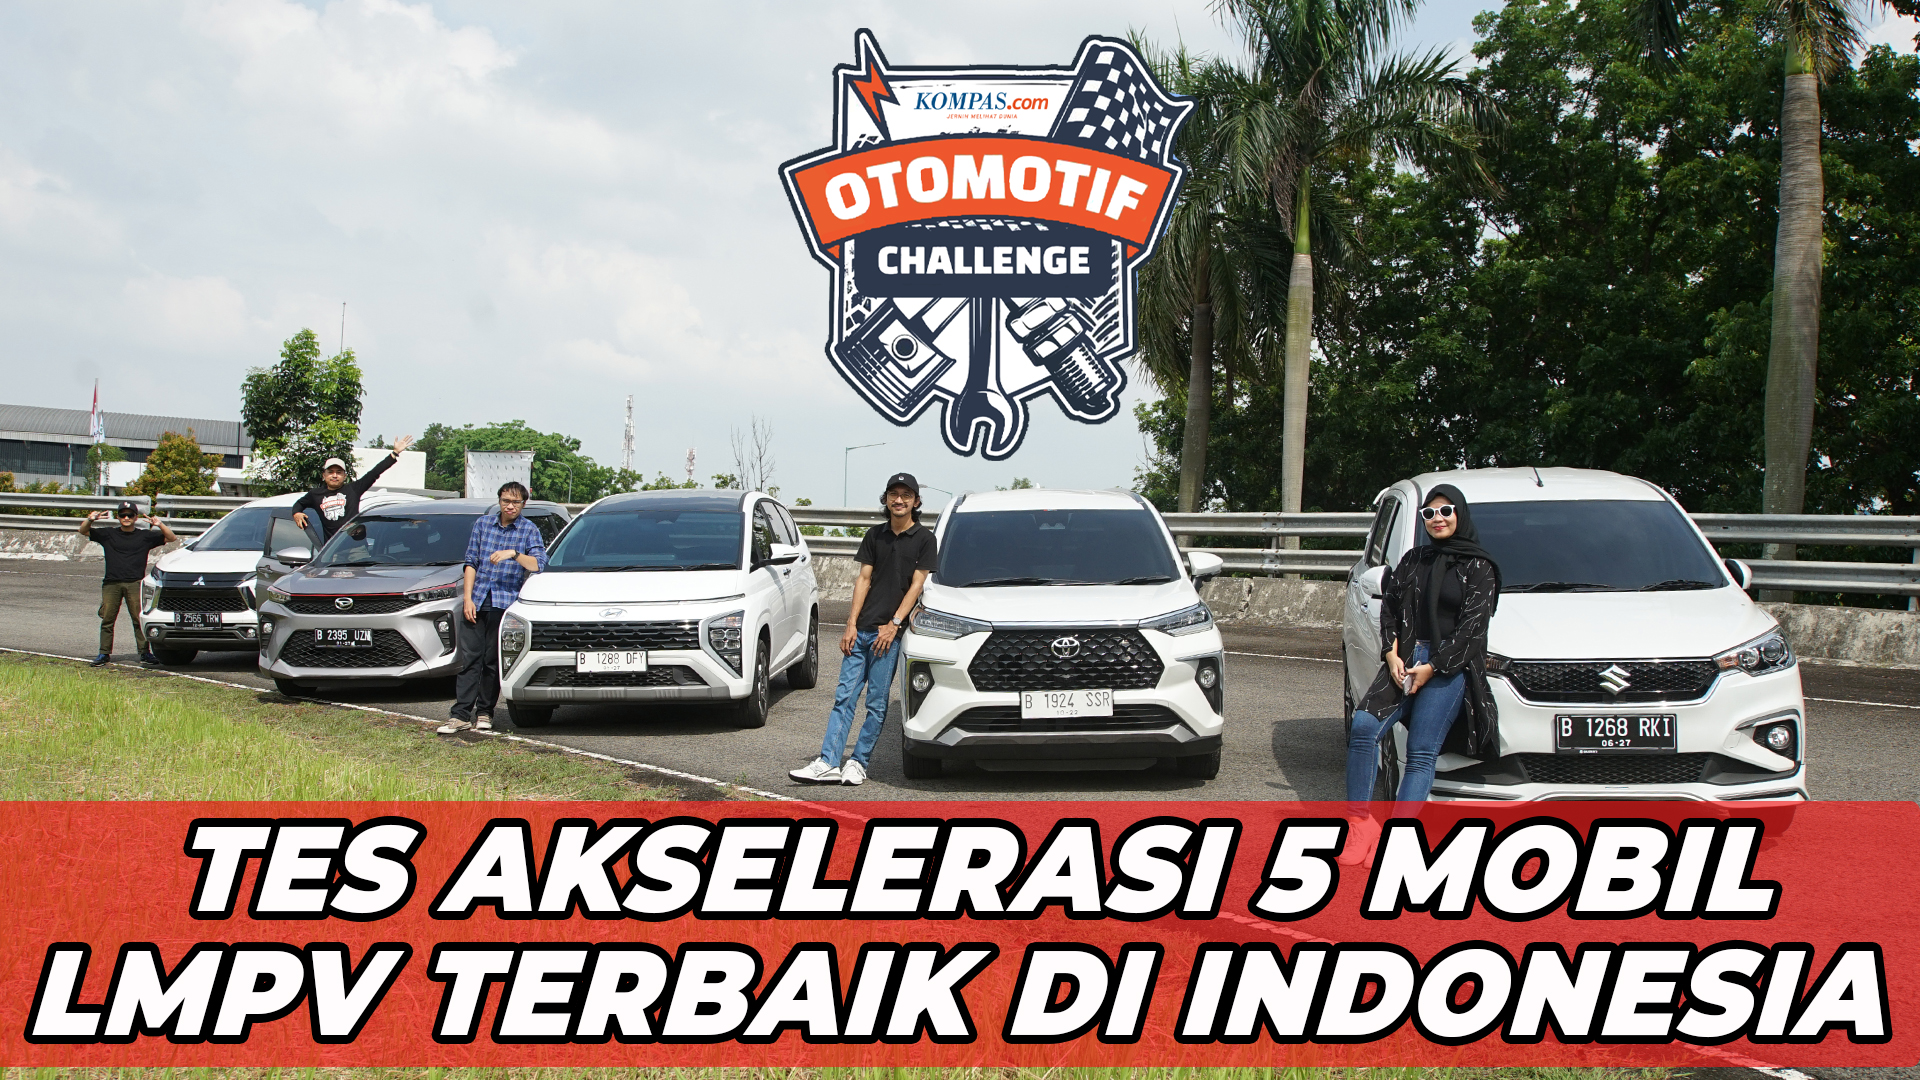 TES AKSELERASI 5 MOBIL LMPV TERBAIK DI INDONESIA | Kompas Otomotif Challenge